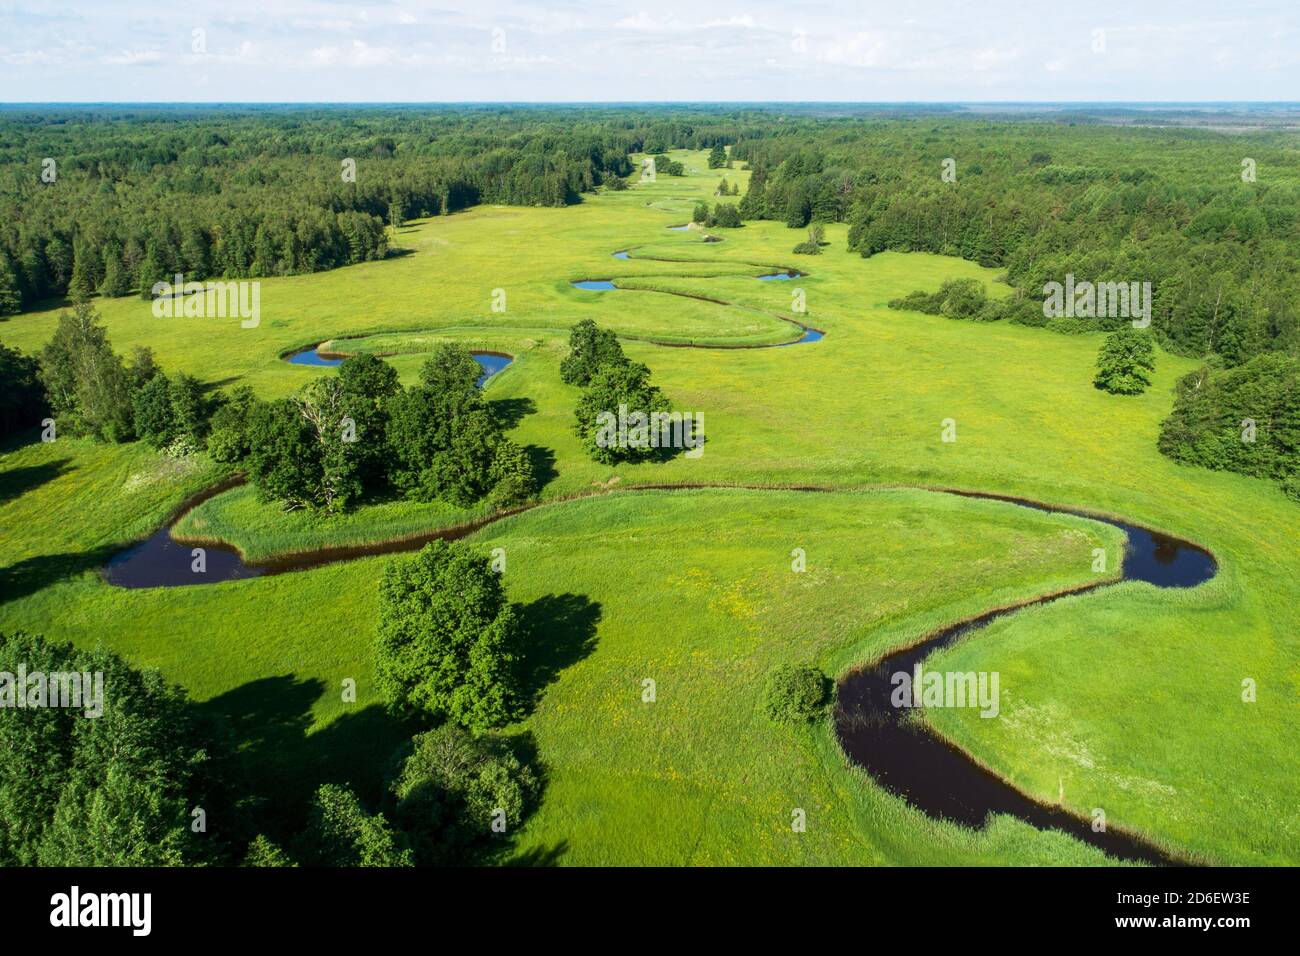 Parc national de Soomaa. Vue aérienne de la végétation luxuriante et ensoleillée de la prairie boisée de Mulgi dans la nature estonienne, en Europe du Nord. Banque D'Images